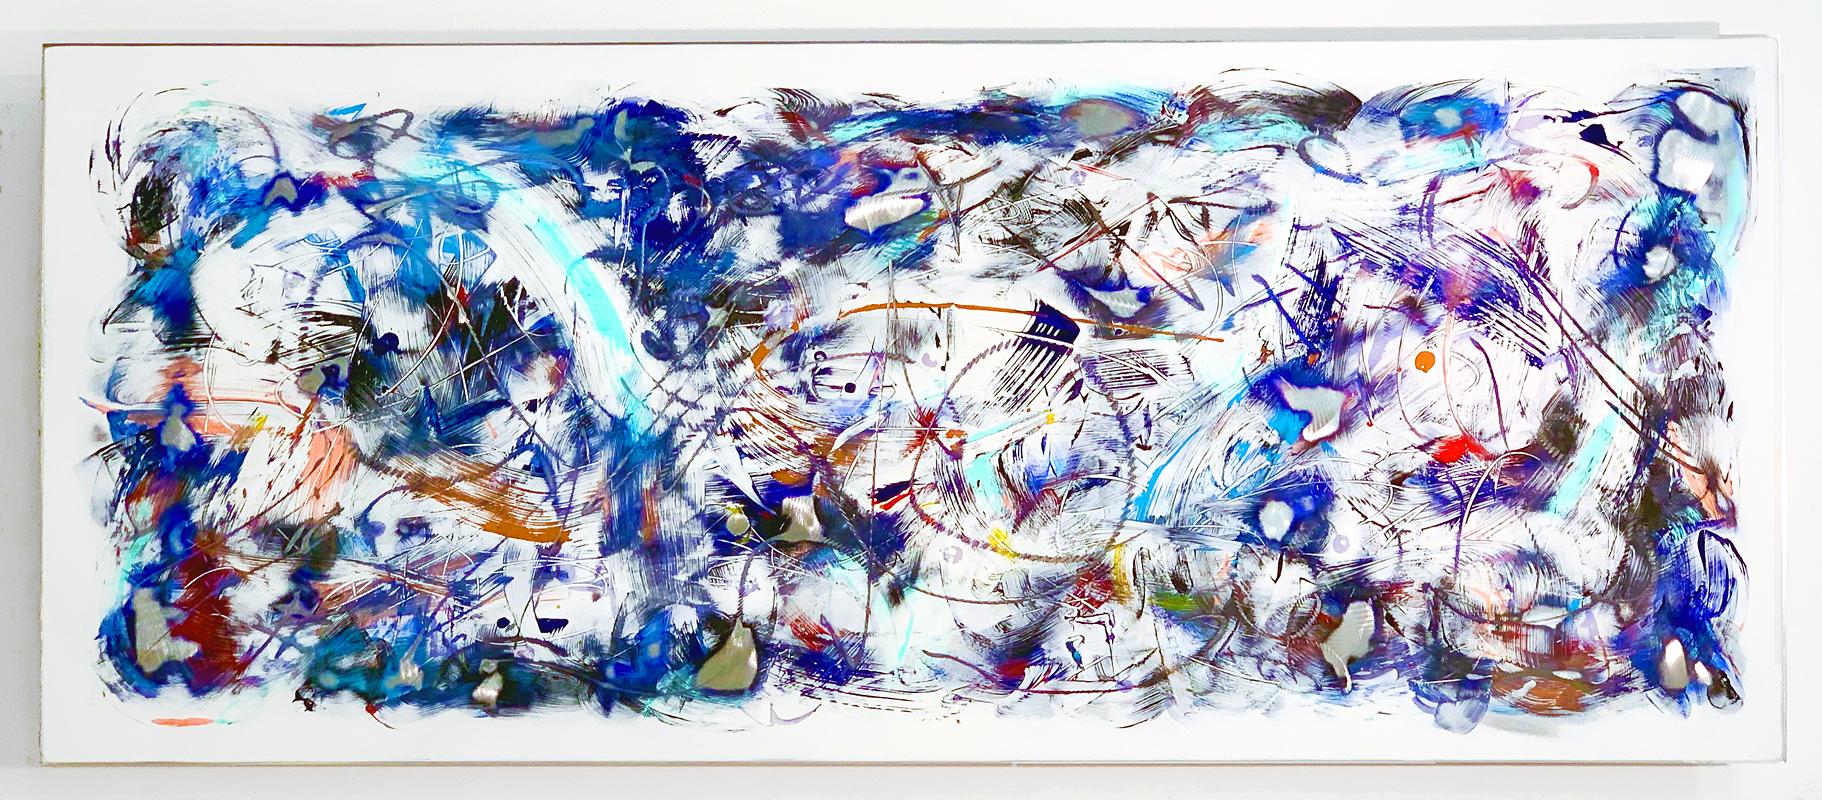 Abstract Painting Kevin S. Barrett - « Ulysses », peinture abstraite colorée sur panneau d'aluminium de Kevin Barrett